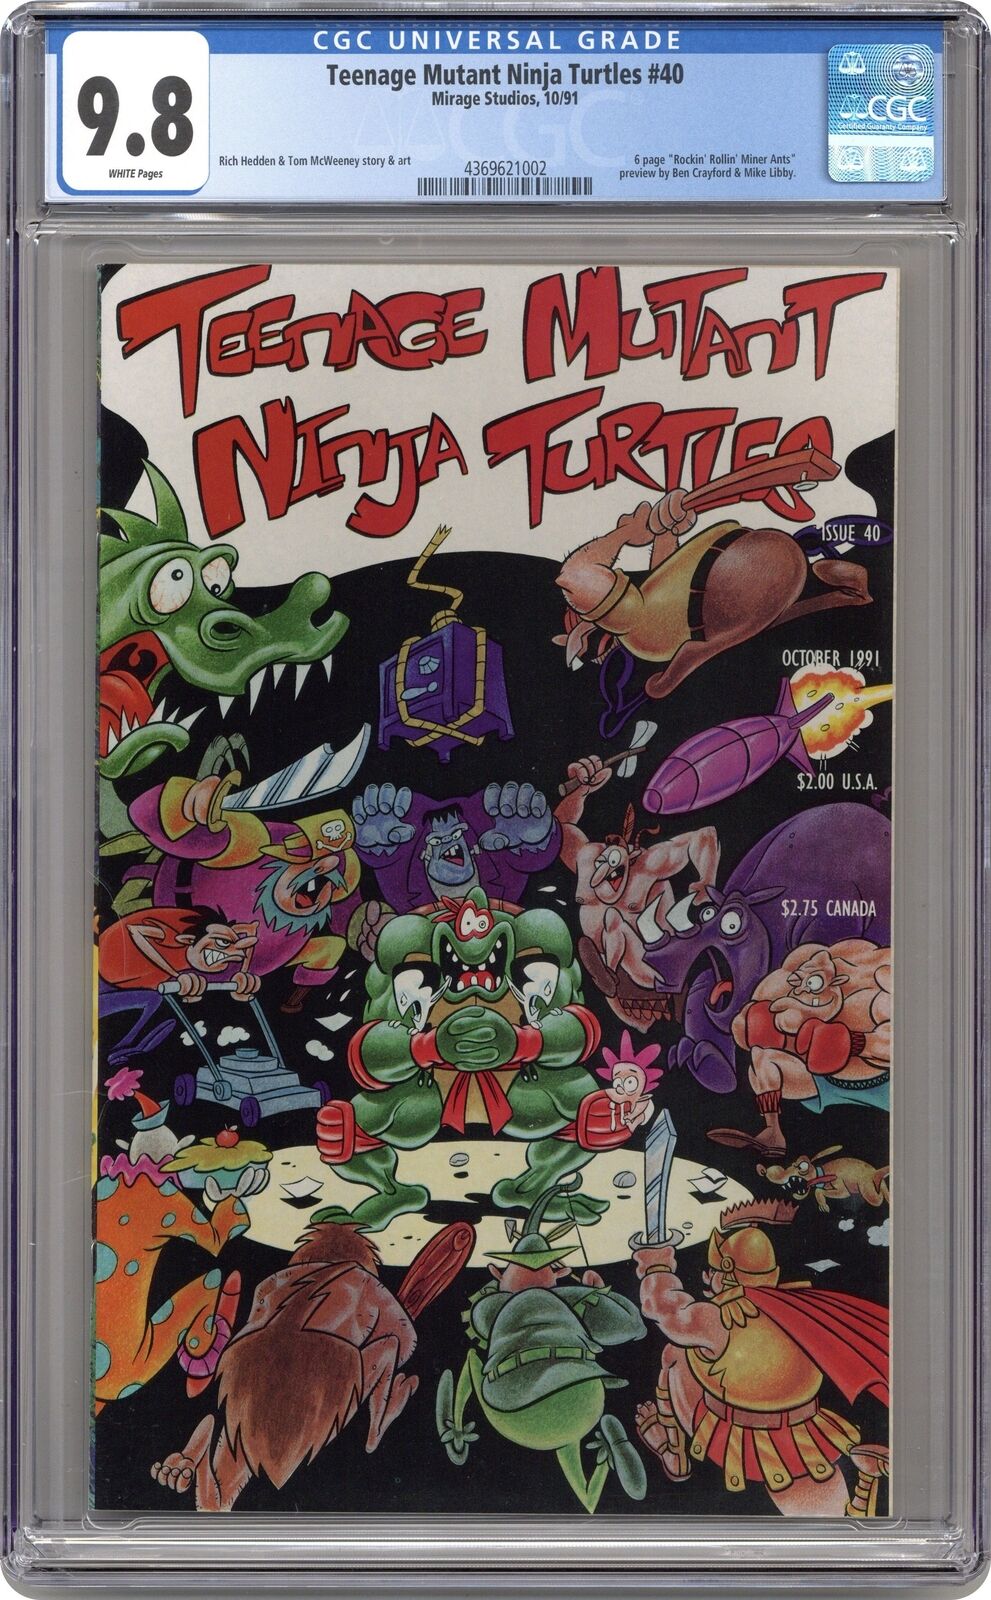 Teenage Mutant Ninja Turtles #40 CGC 9.8 1991 4369621002